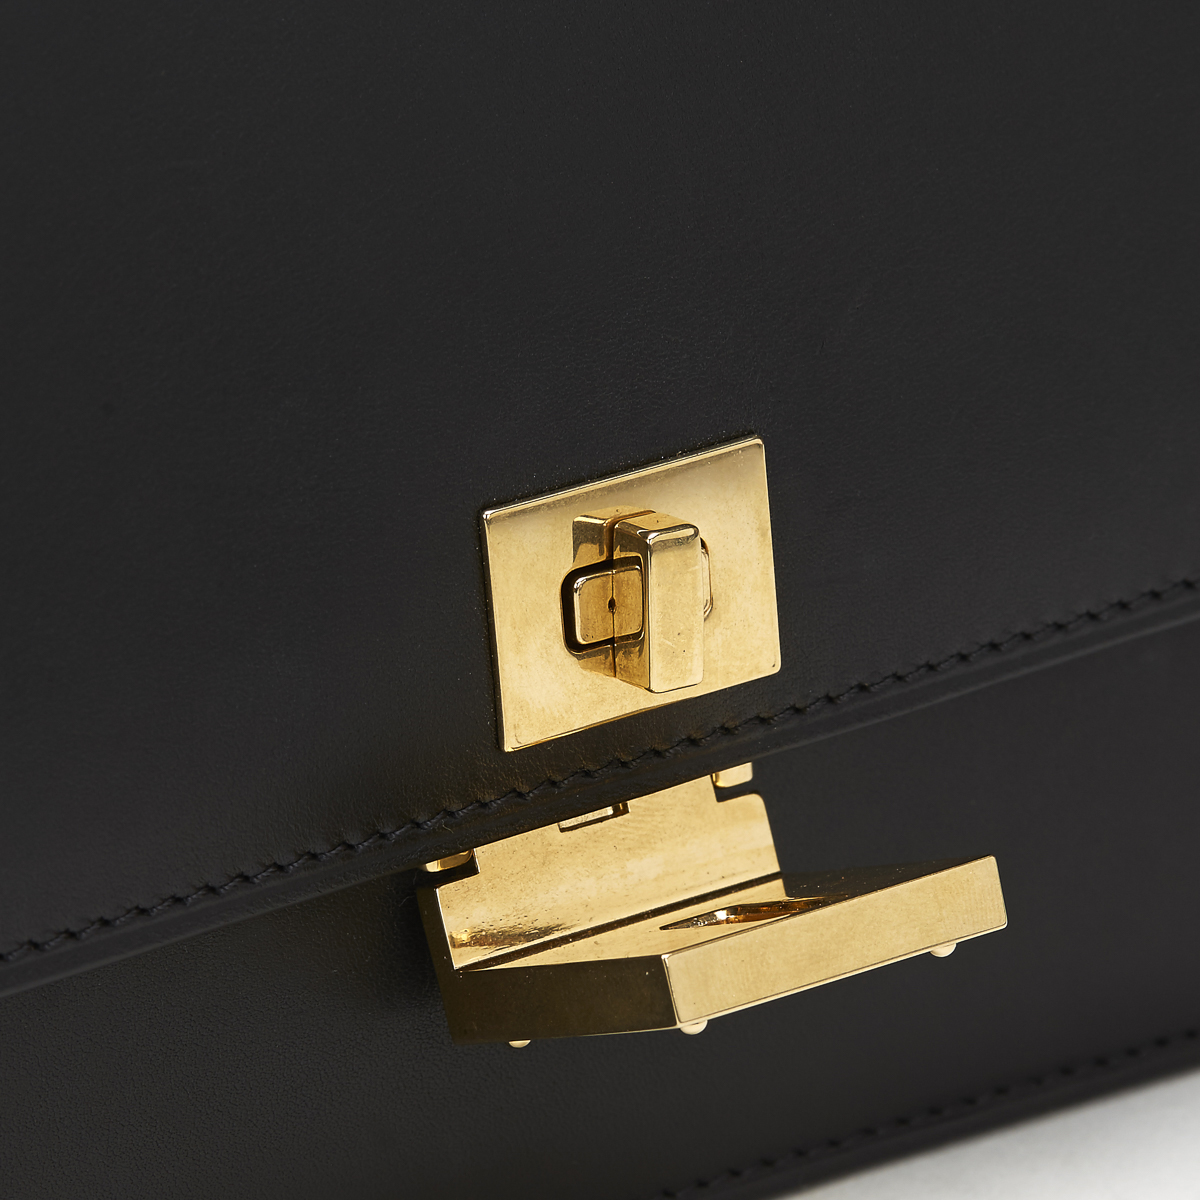 CELINE Case Flap Bag , - Black Smooth Leather Case Flap Bag   TYPE Shoulder SERIAL NUMBER F-CE- - Image 7 of 12